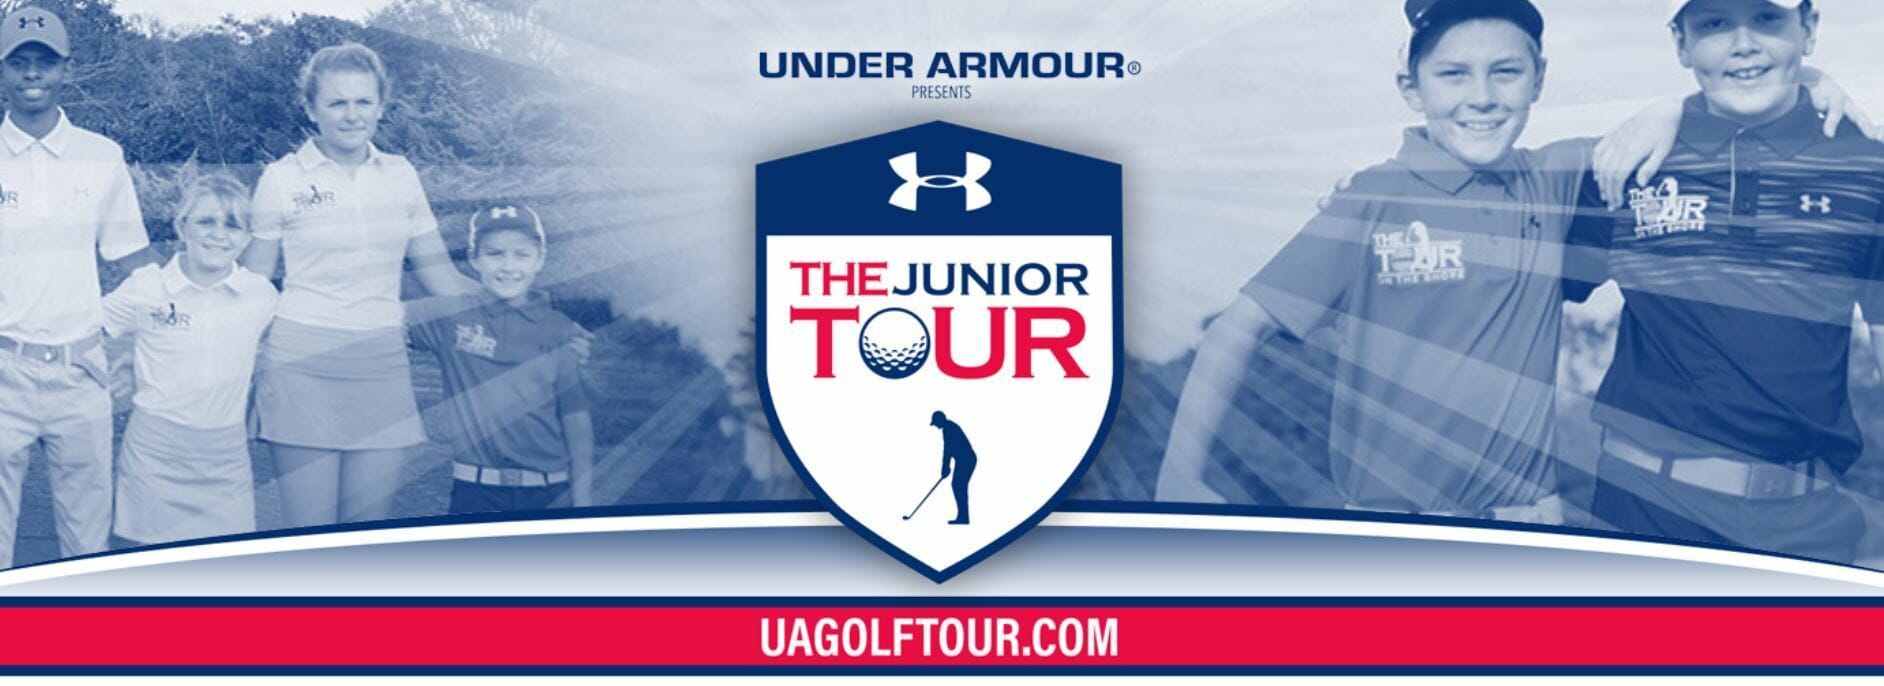 Under Armour Junior Tour